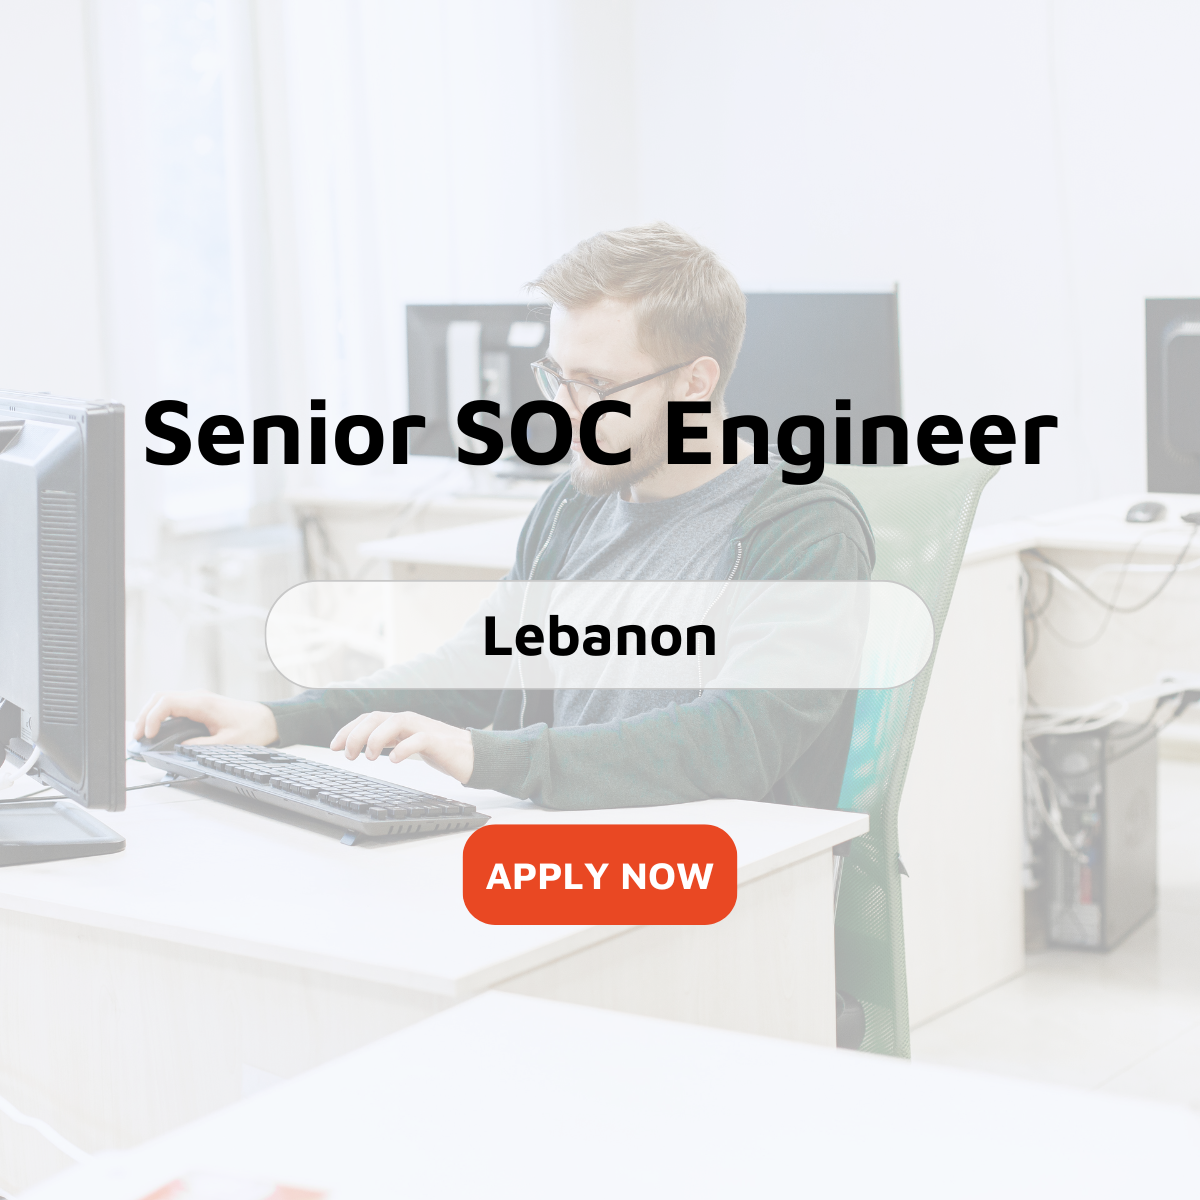 Senior SOC Engineer